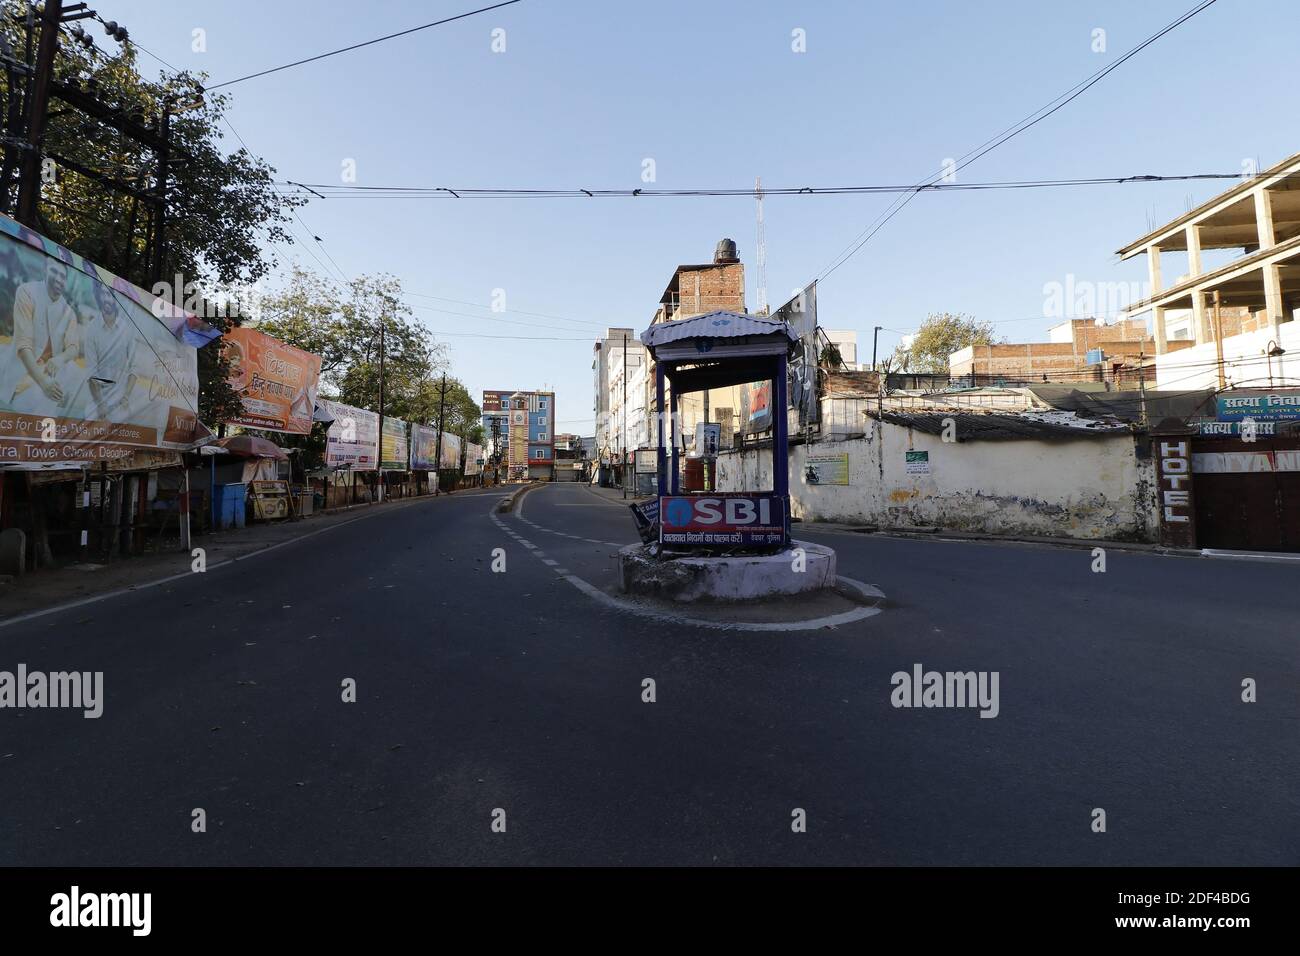 Tower Chowk, el centro de la ciudad no observa tráfico en la carretera durante el período de bloqueo en Deoghar, Jharkhand, India el 29 de marzo de 2020. La India está bloqueada hasta el 14 de abril por un período de 21 días en precaución de Covid -19. Foto de Anshuman Akash/ABACAPRESS.COM Foto de stock